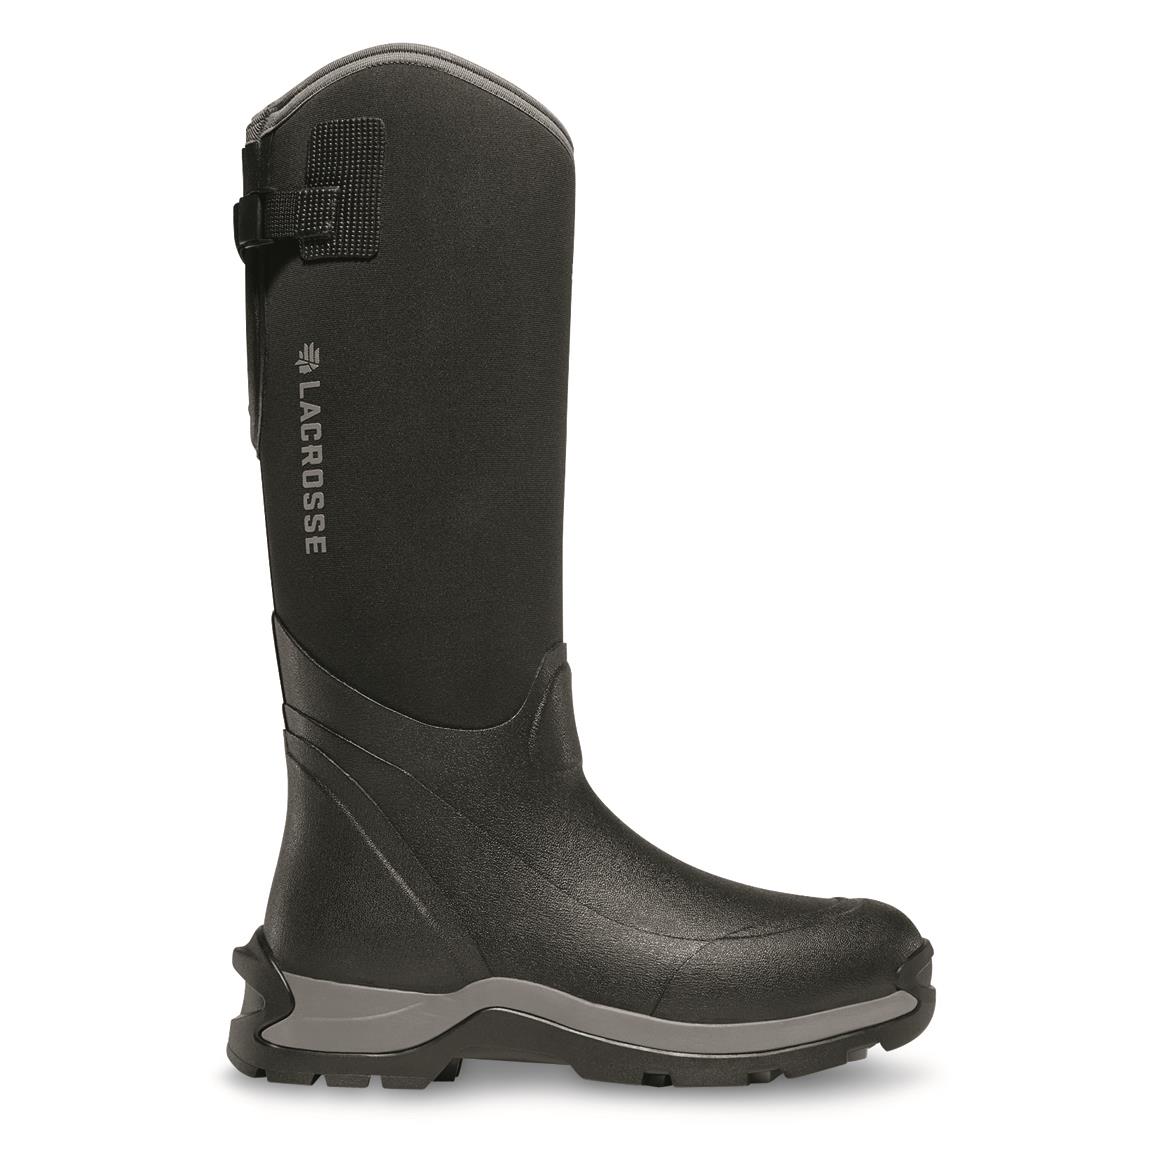 LaCrosse Alpha Thermal 16" Men's Composite Toe Rubber Boots, Black